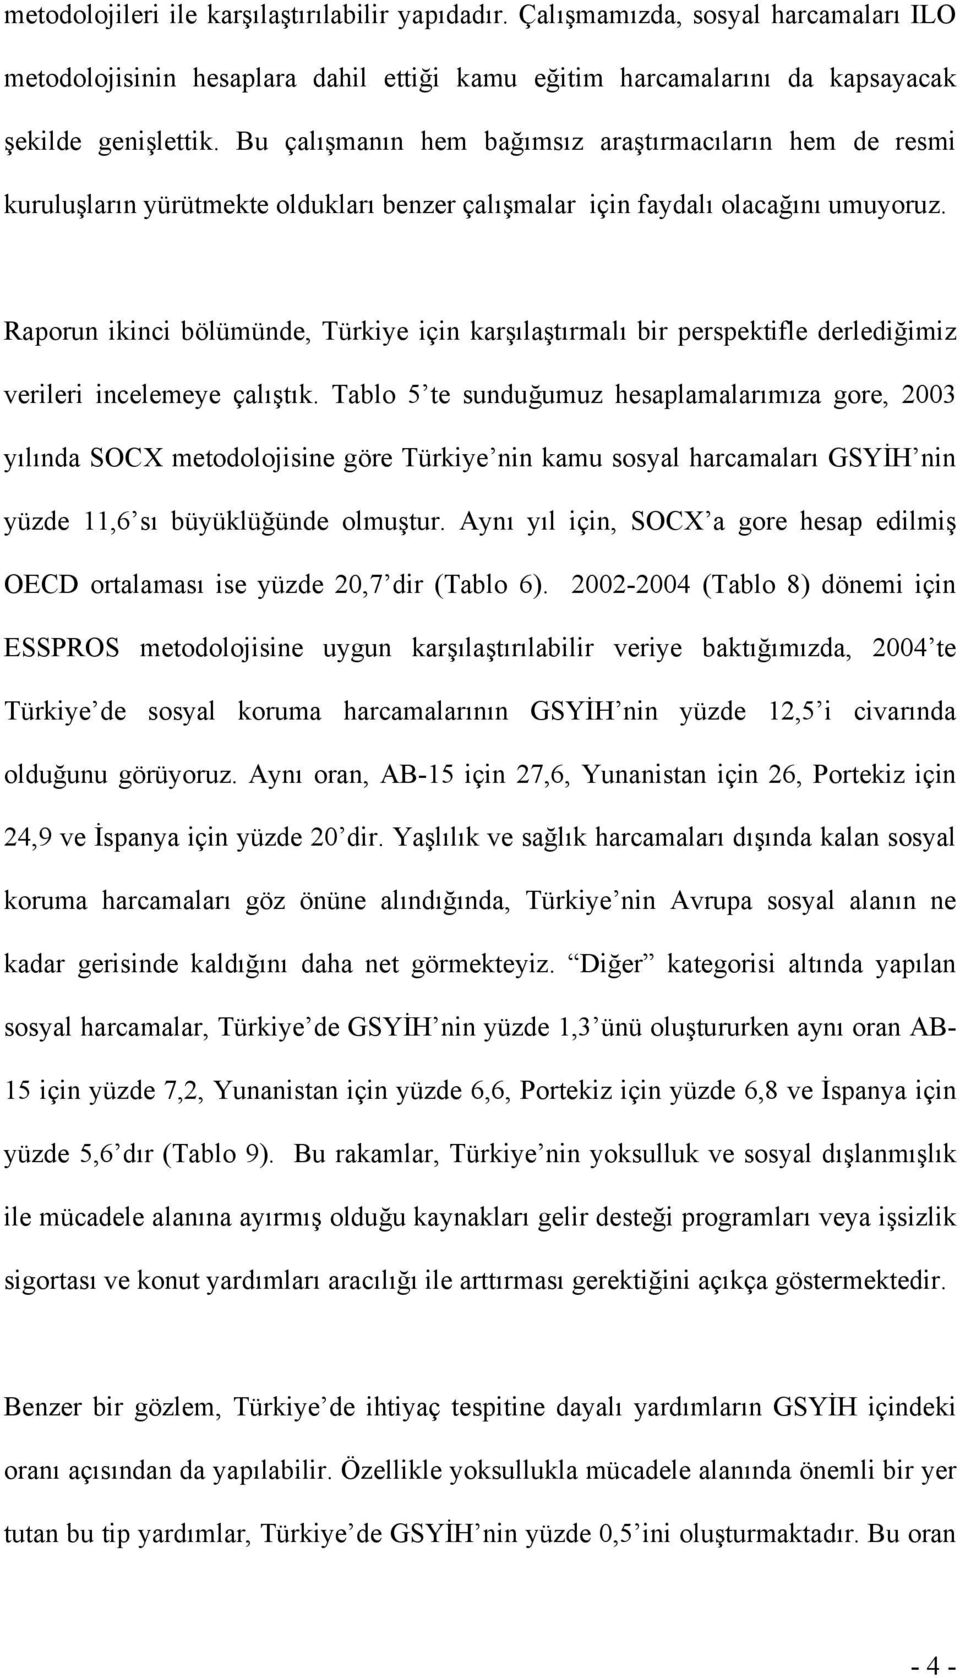 Raporun ikinci bölümünde, Türkiye için karşılaştırmalı bir perspektifle derlediğimiz verileri incelemeye çalıştık.